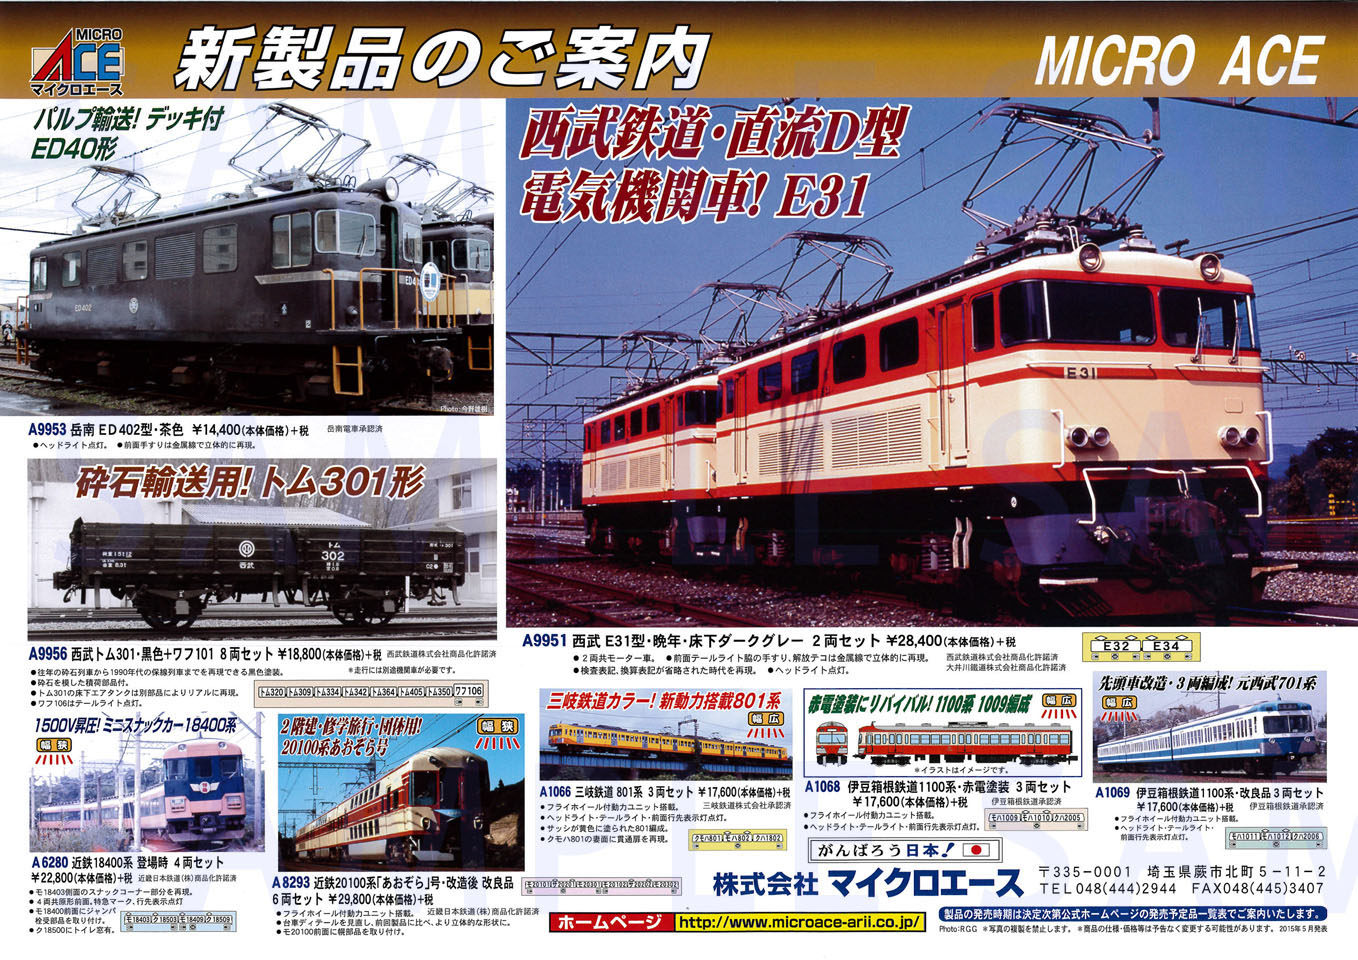 近鉄 20100系 「あおぞら」号・改造後 改良品 (6両セット) (鉄道模型